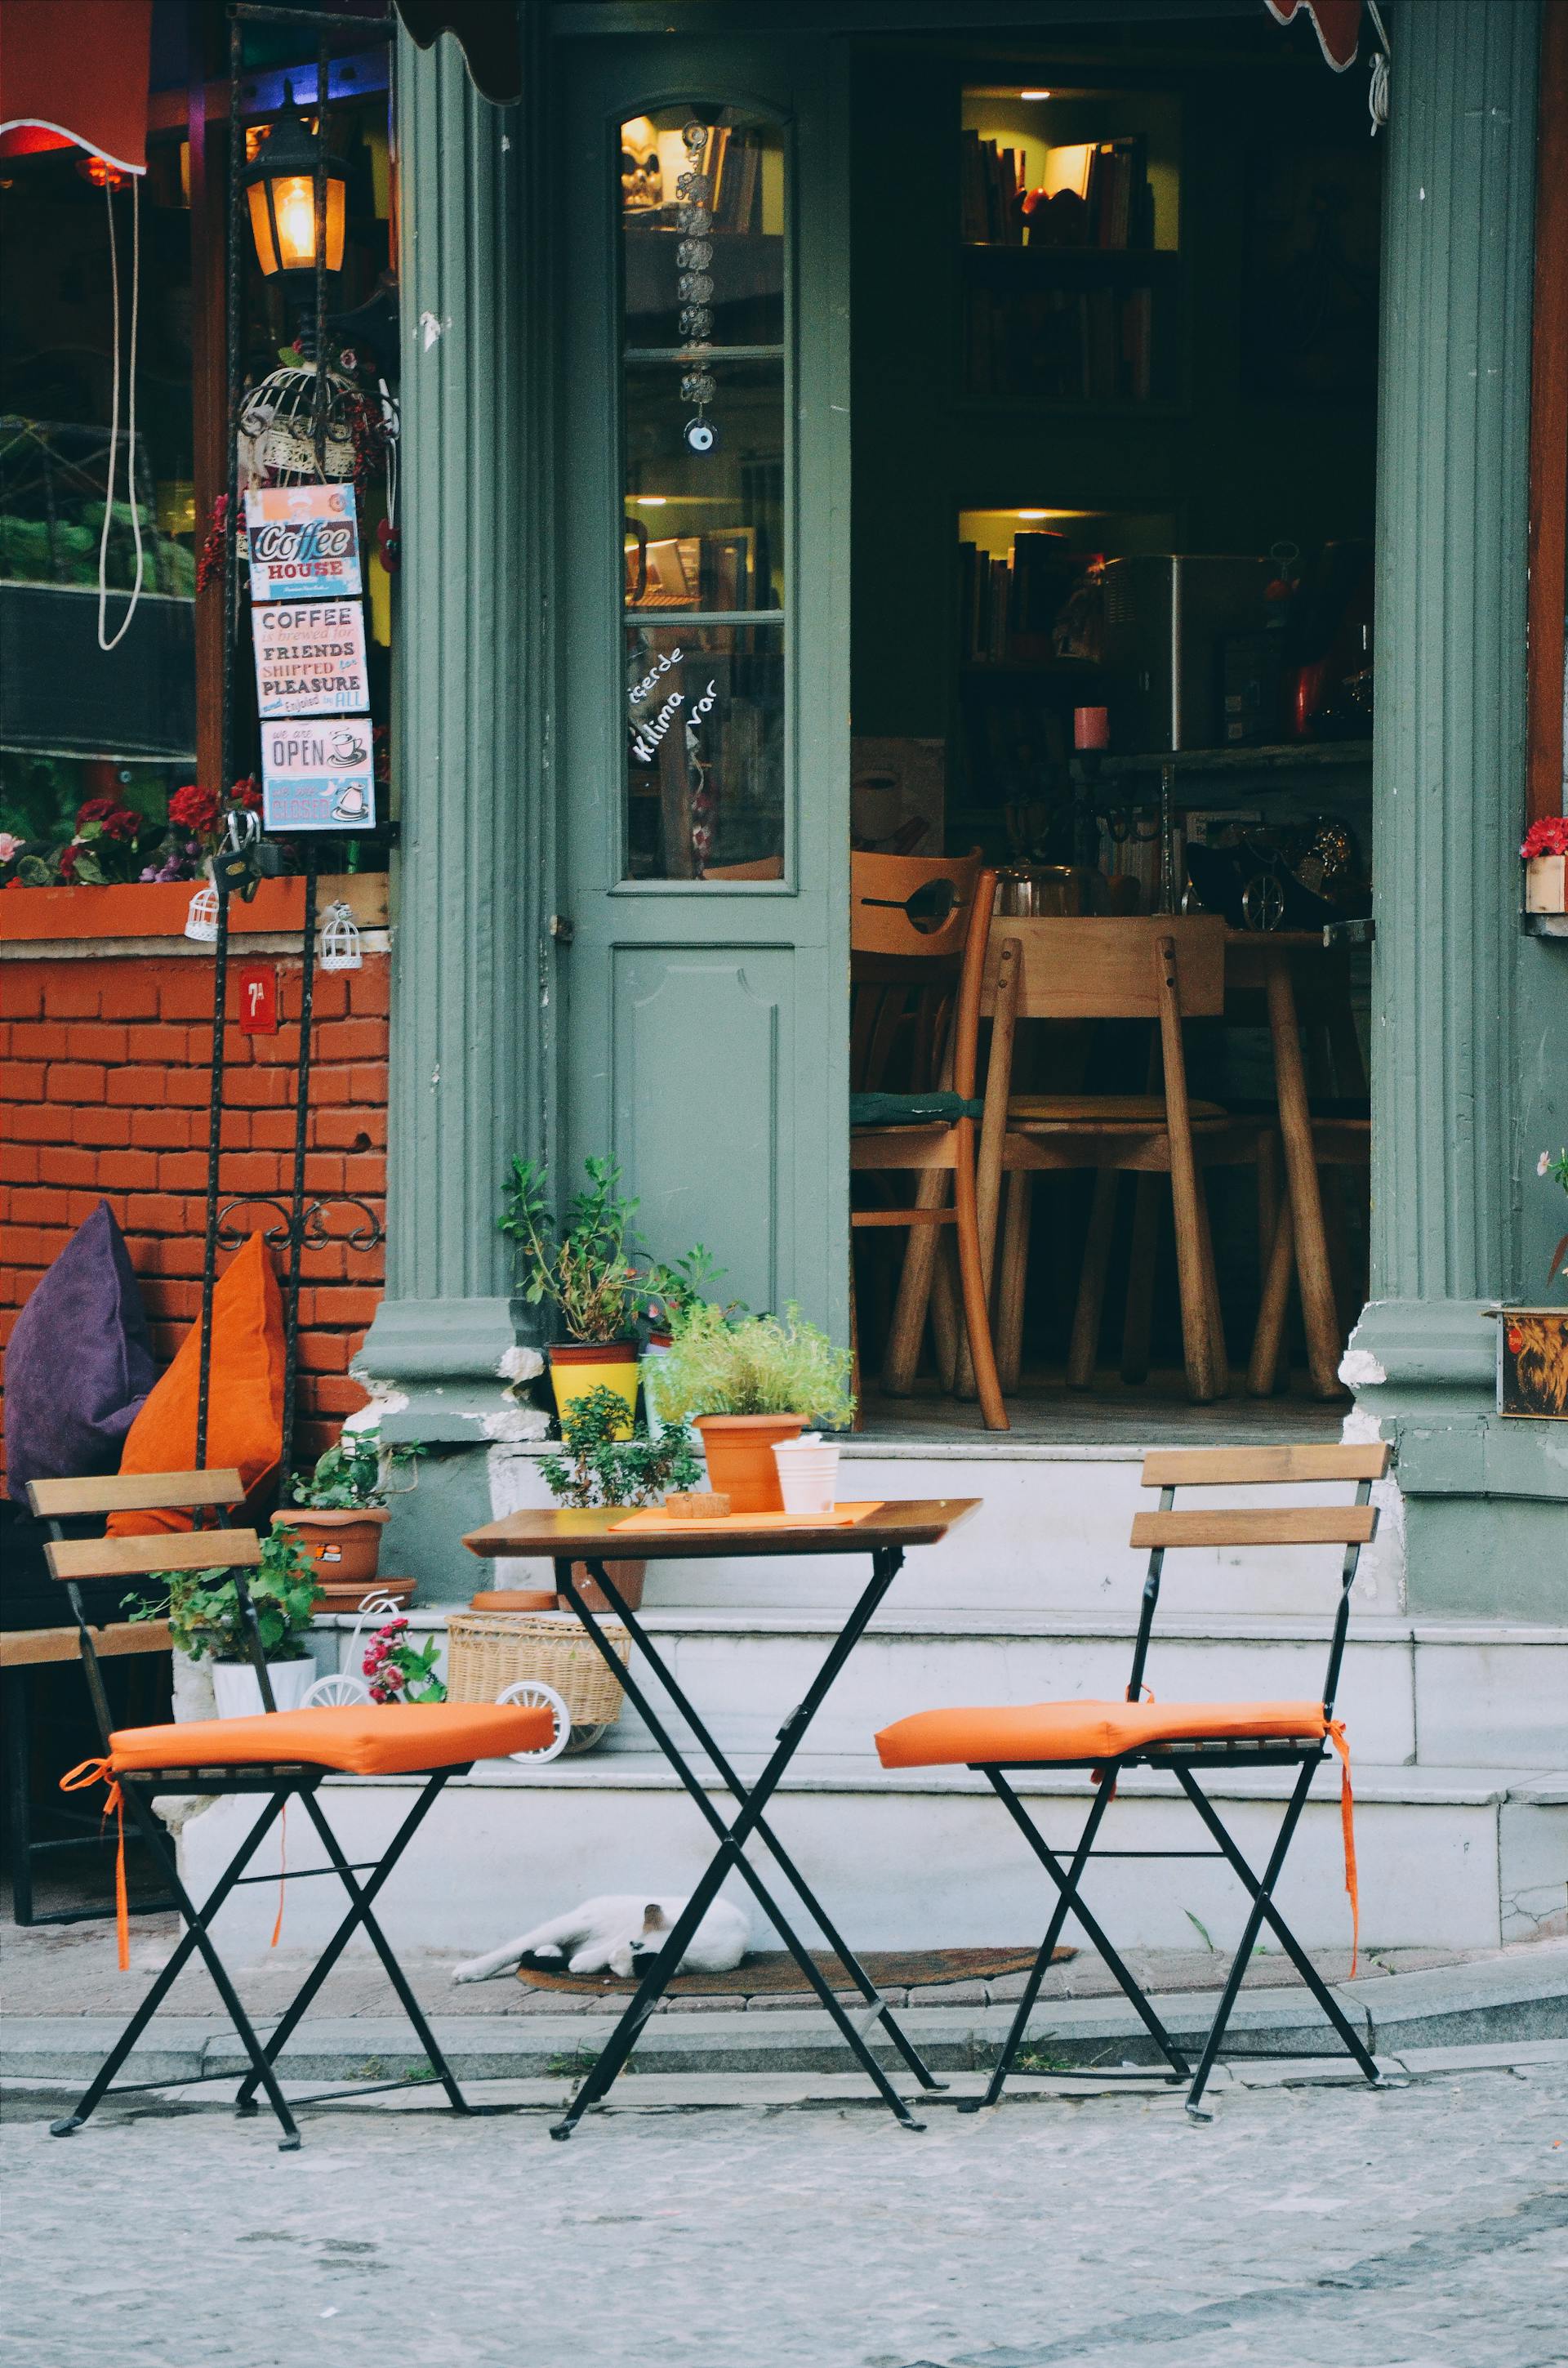 Un juego de patio de tres piezas marrón y naranja en el exterior de una cafetería | Foto: Pexels